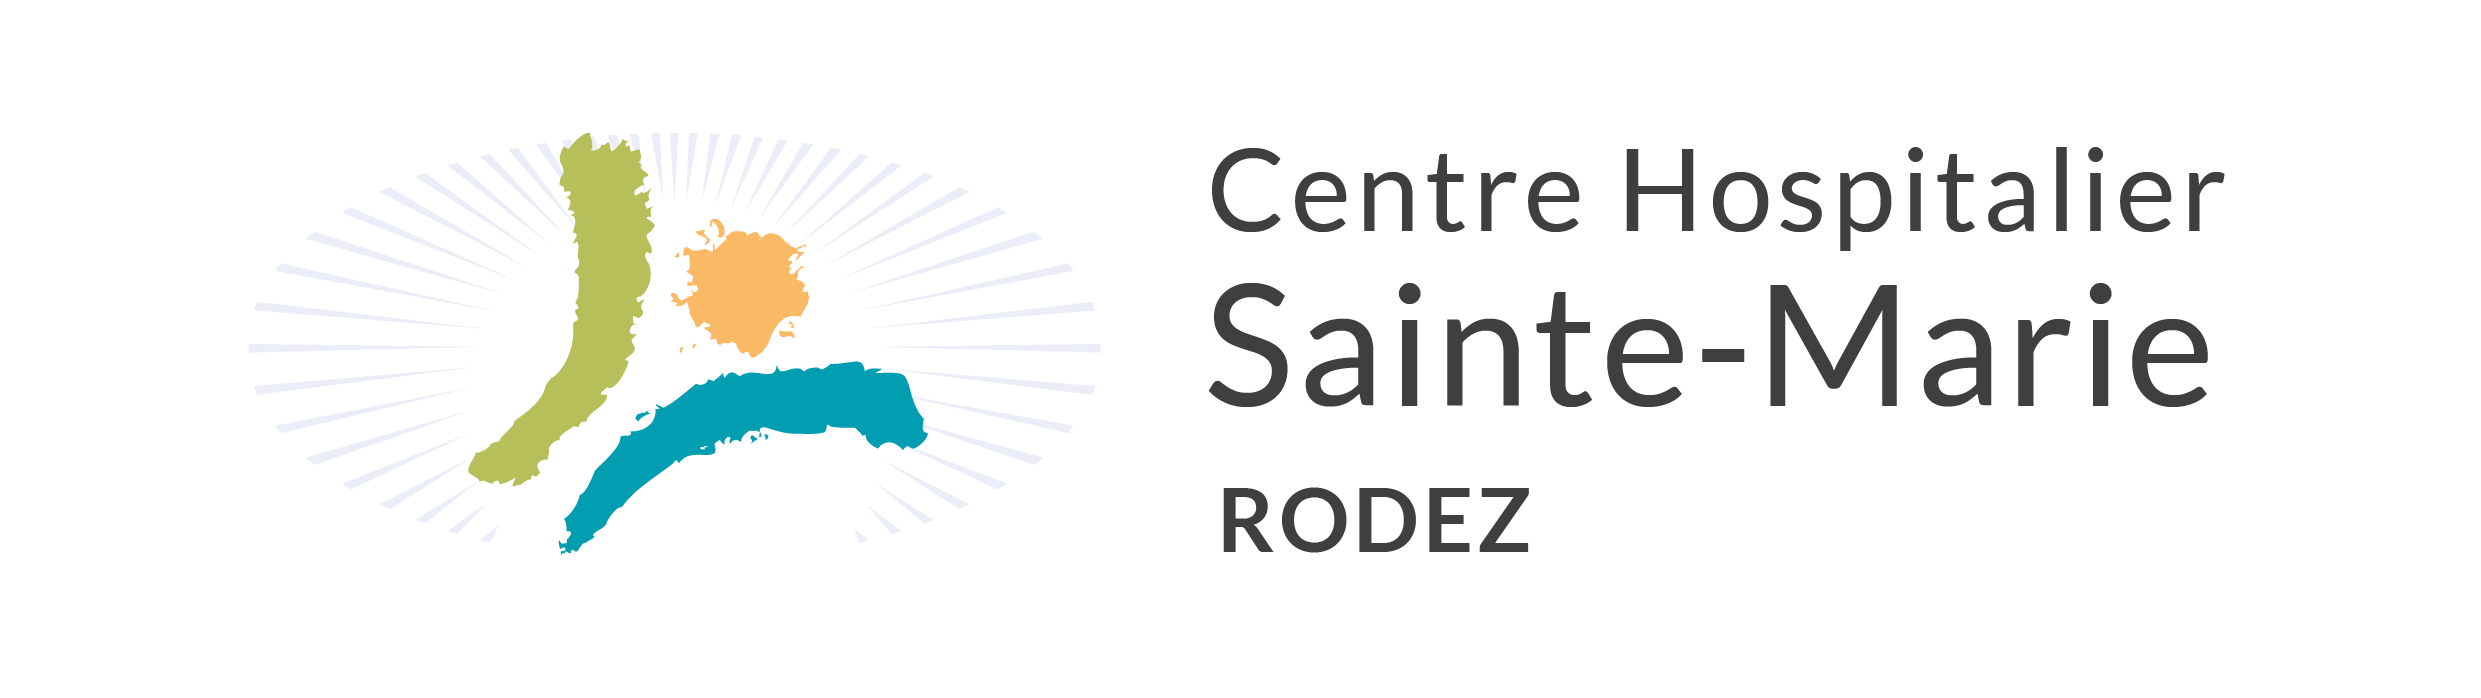 Centre Hospitalier Sainte-Marie Rodez